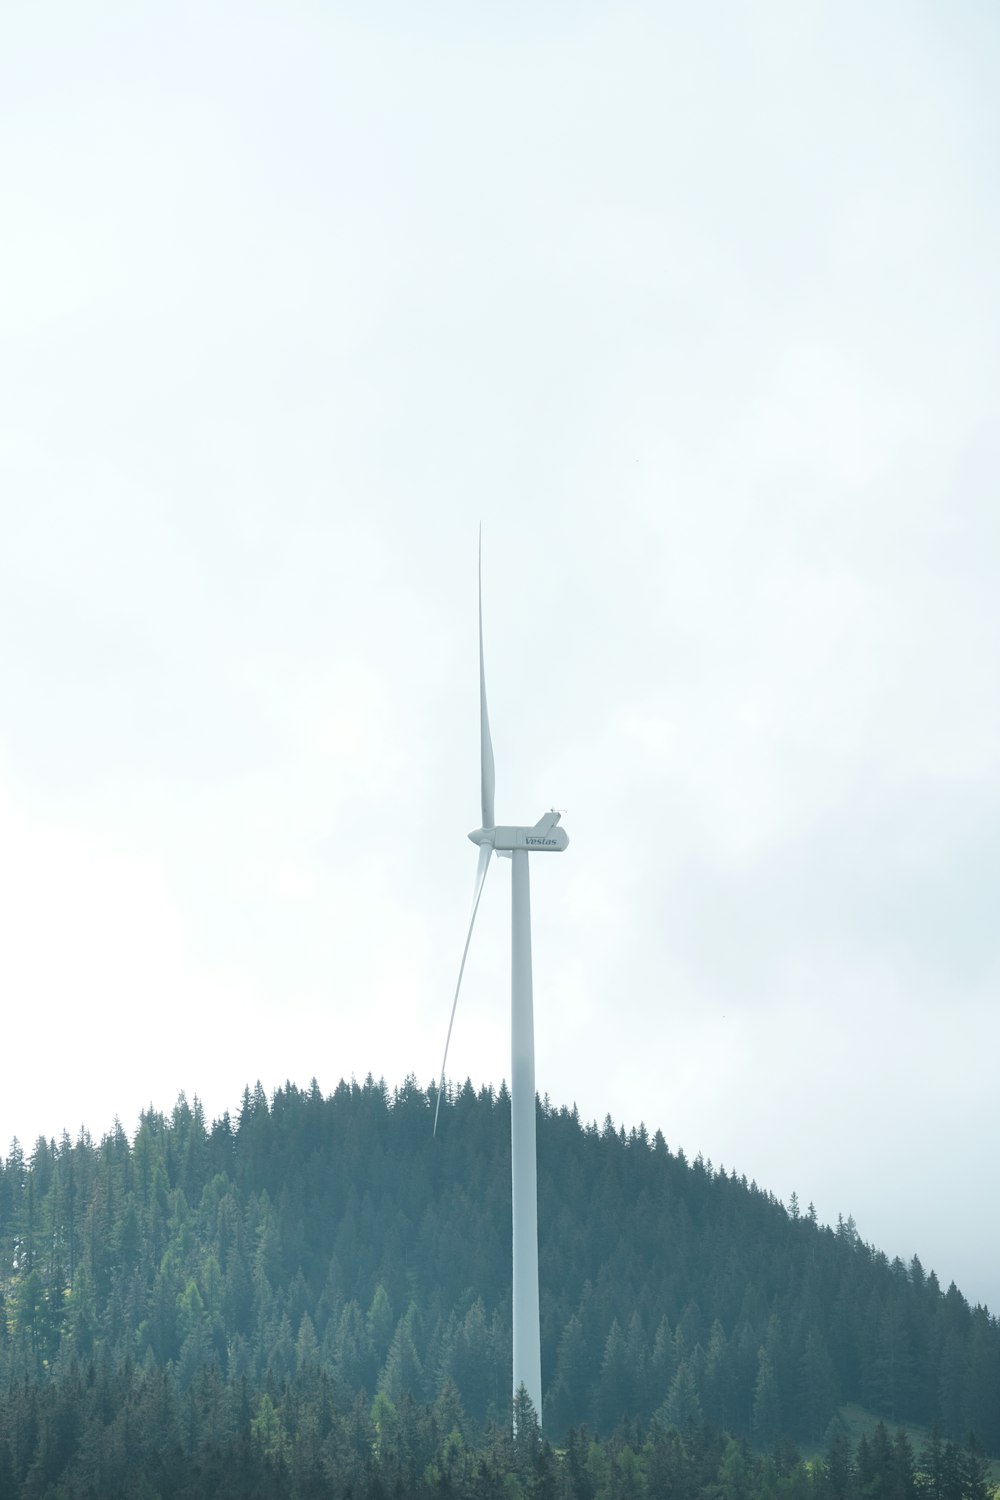 배경에 나무가 있는 언덕 위의 풍력 터빈